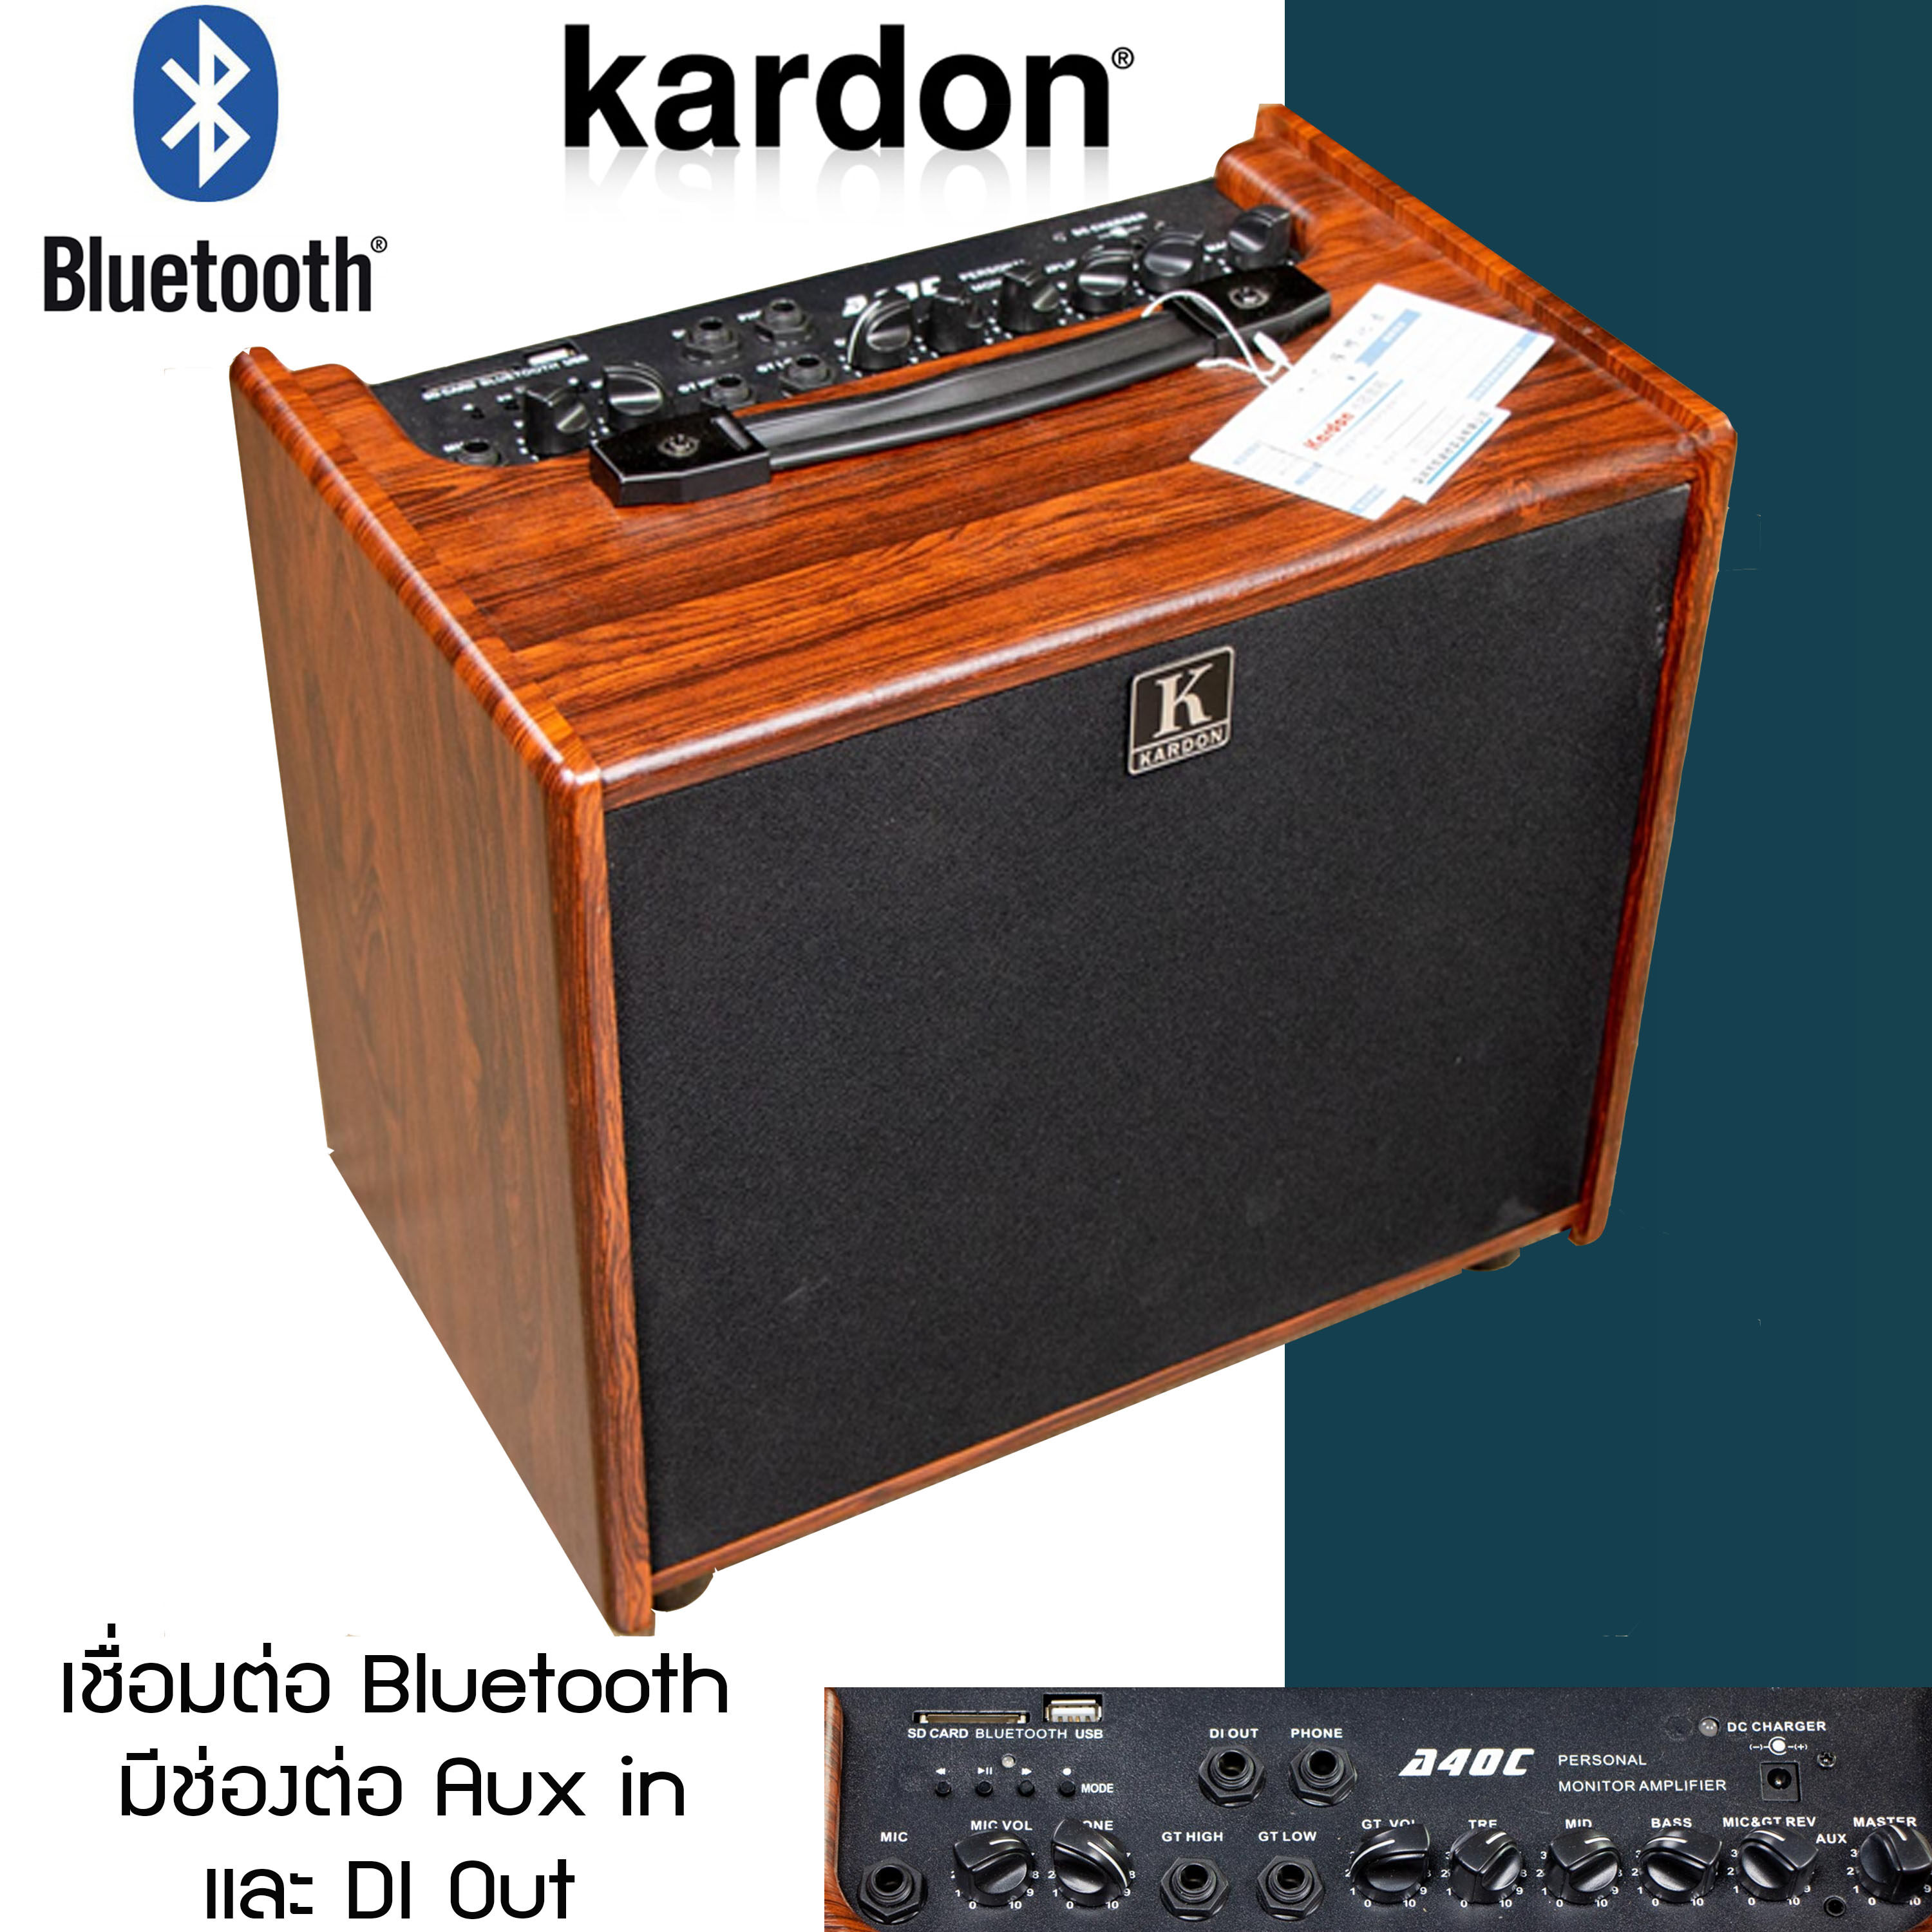 Kardon A40 แอมป์กีต้าร์ 40 วัตต์ มีแบตเตอรี่ในตัว มี Bluetooth +ประกันระบบไฟ 1 ปี Music Arms